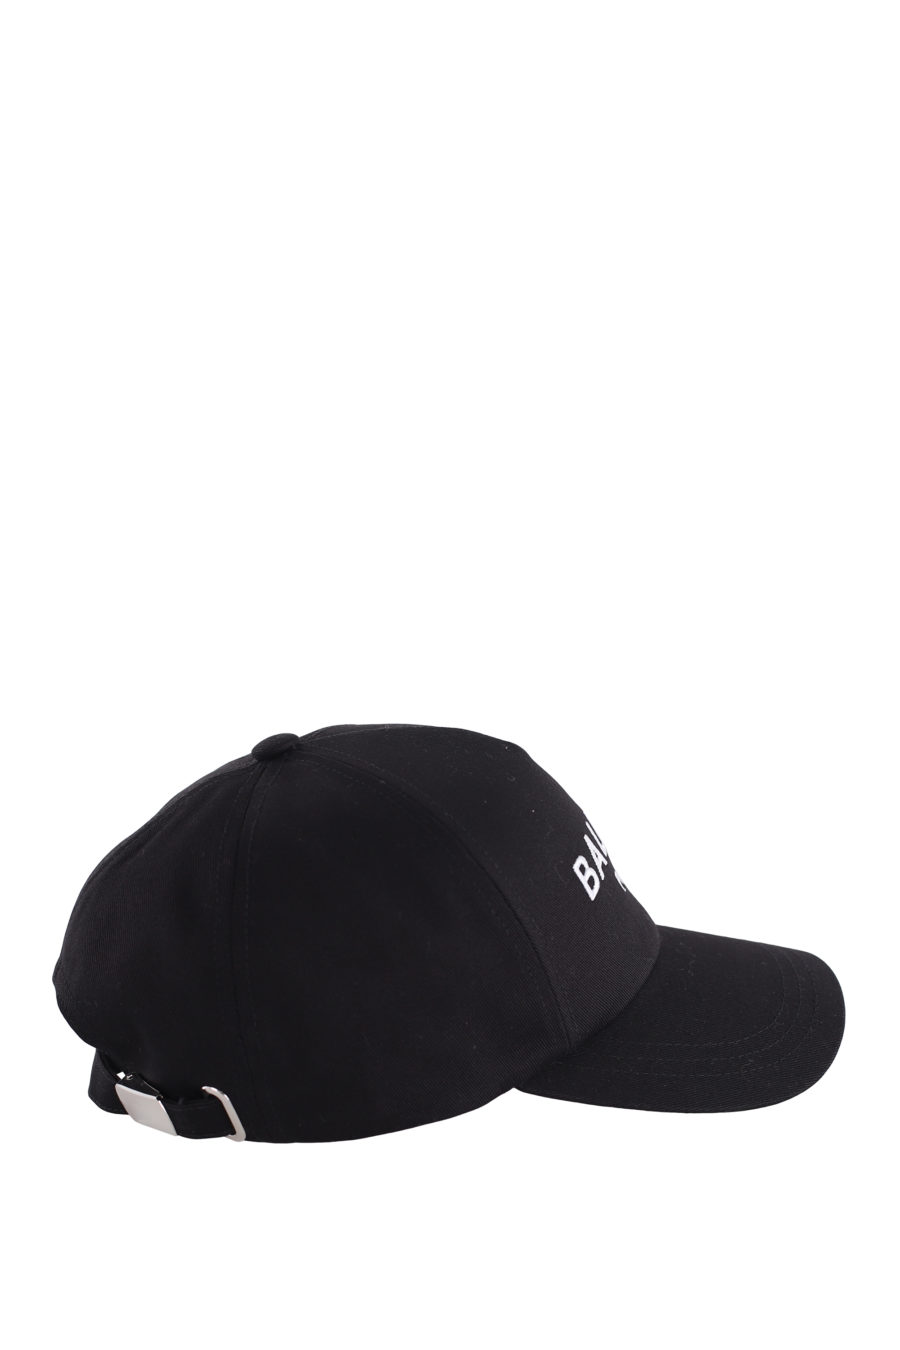 Gorra negra con logotipo bordado - IMG 7261